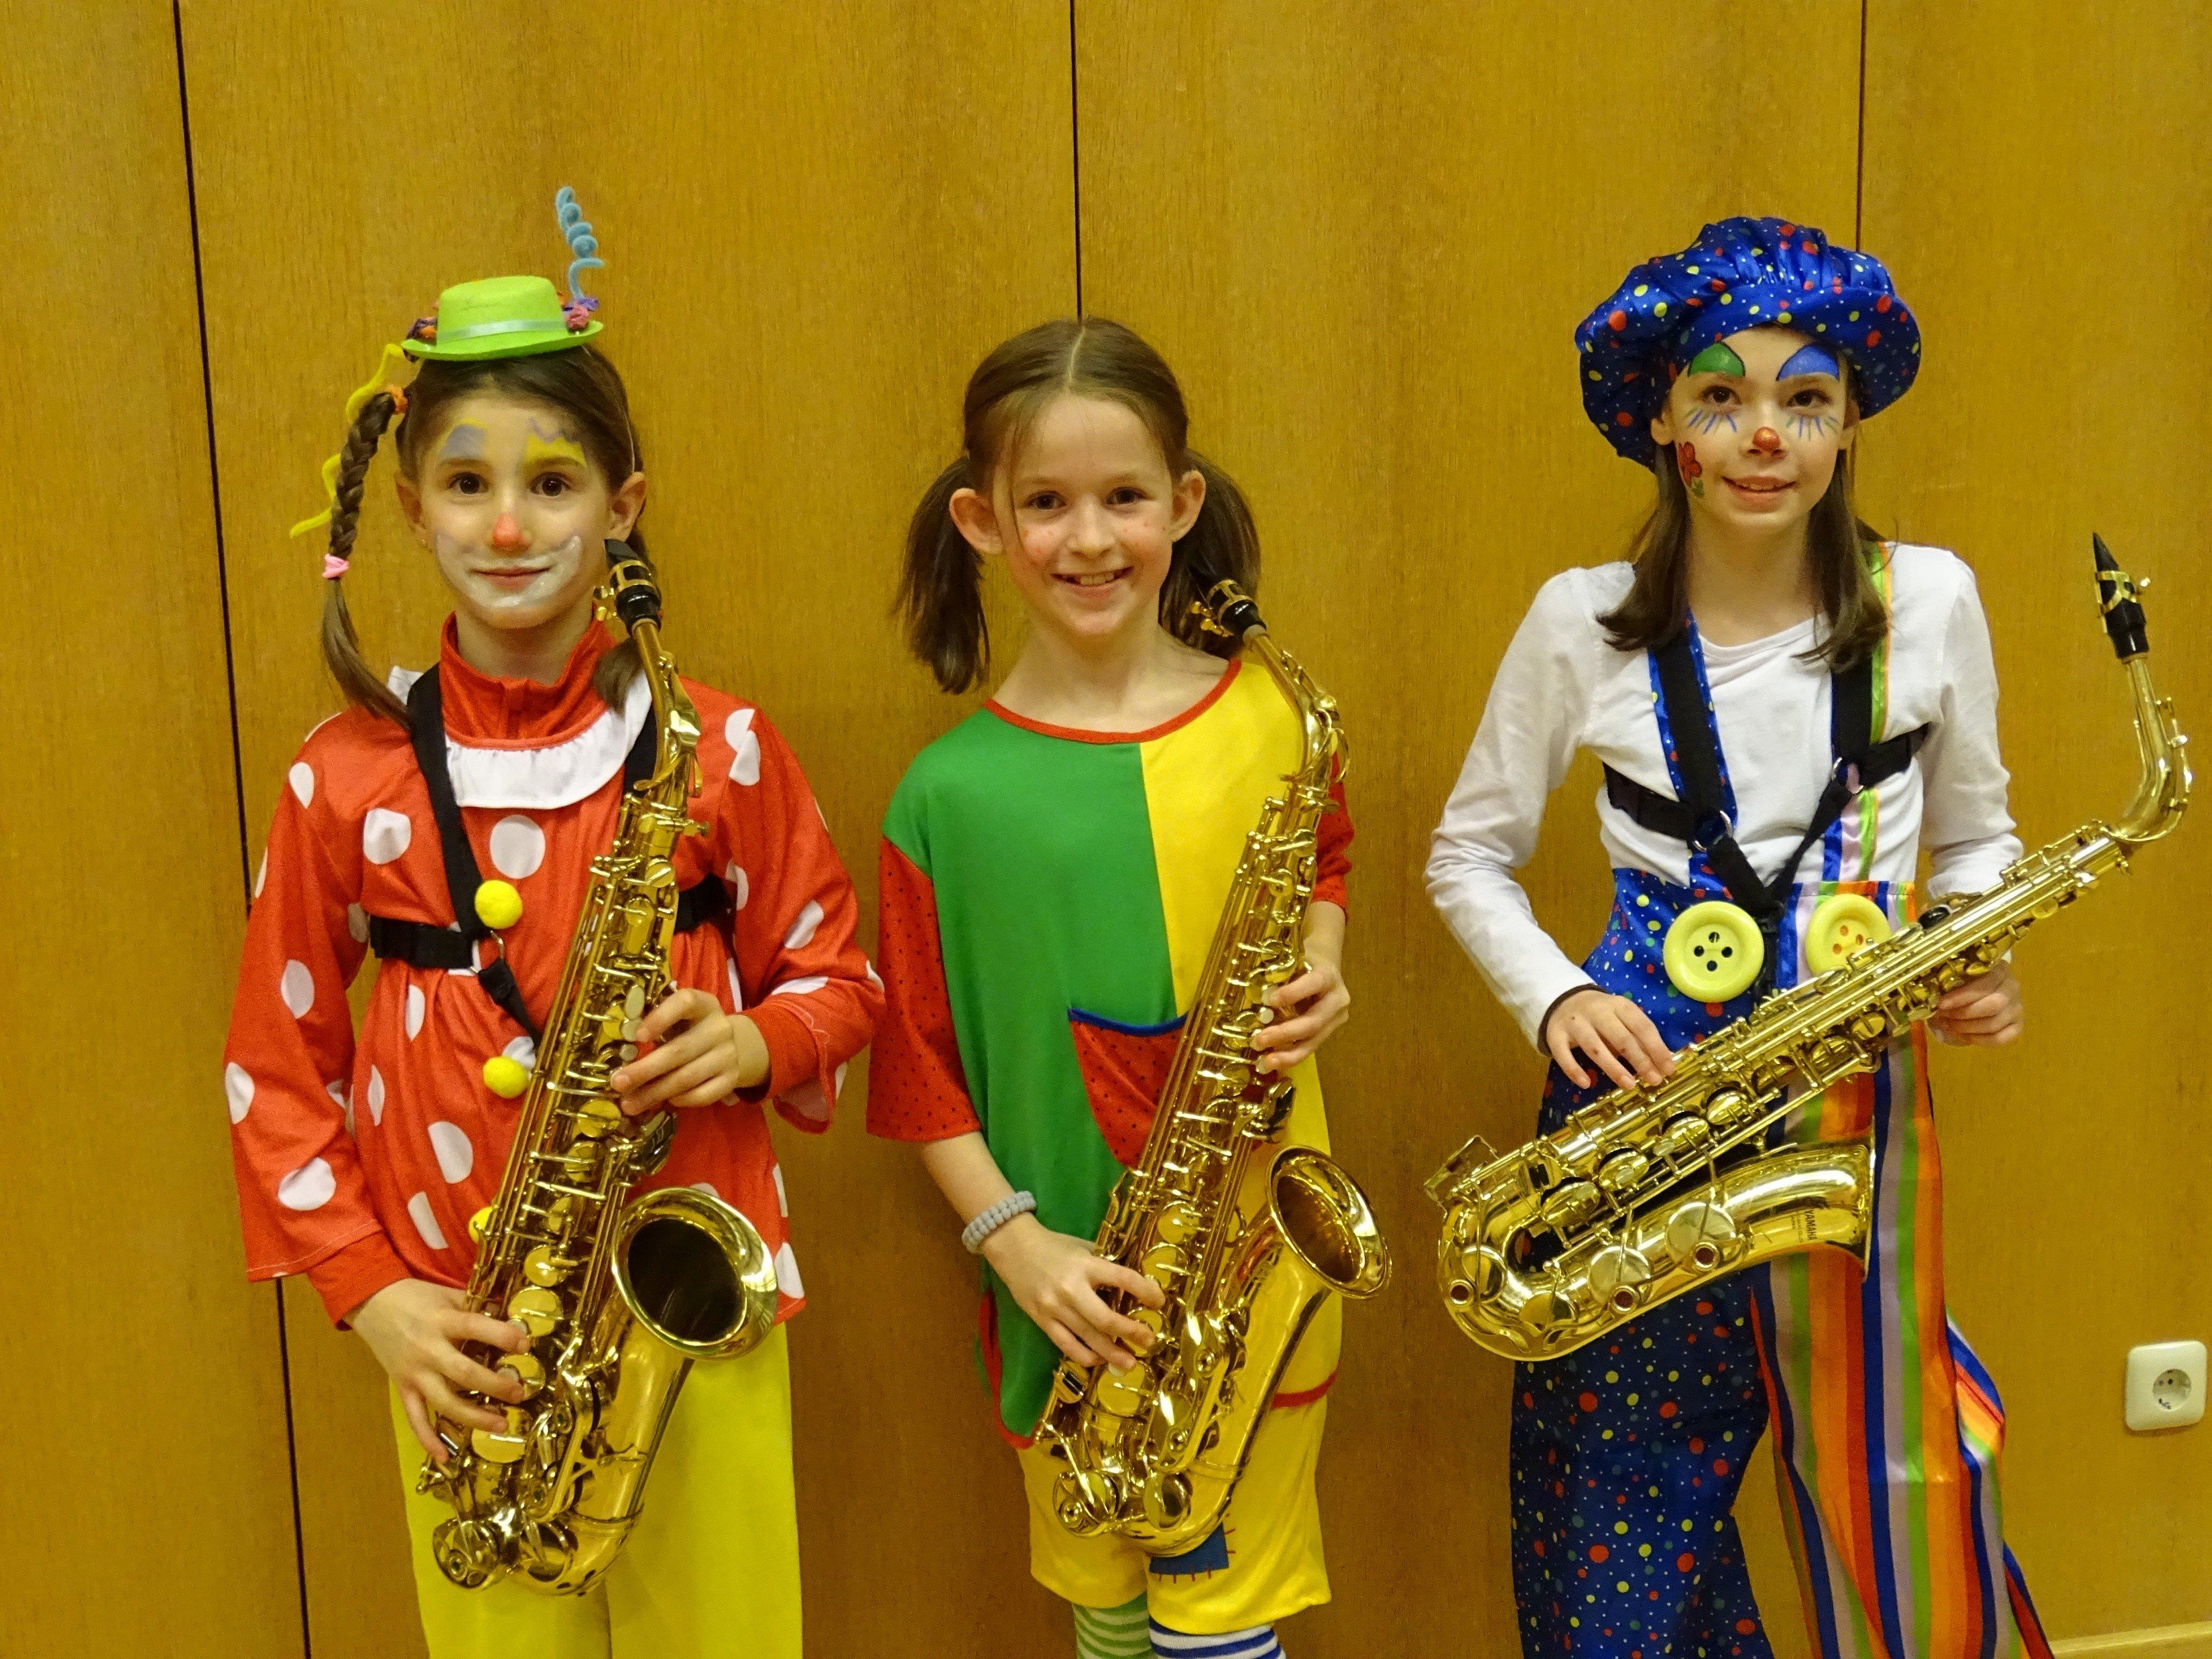 Die Saxophon spielenden Clown waren nur einer der vielen Programmpunkte beim Bunten Musizieren.